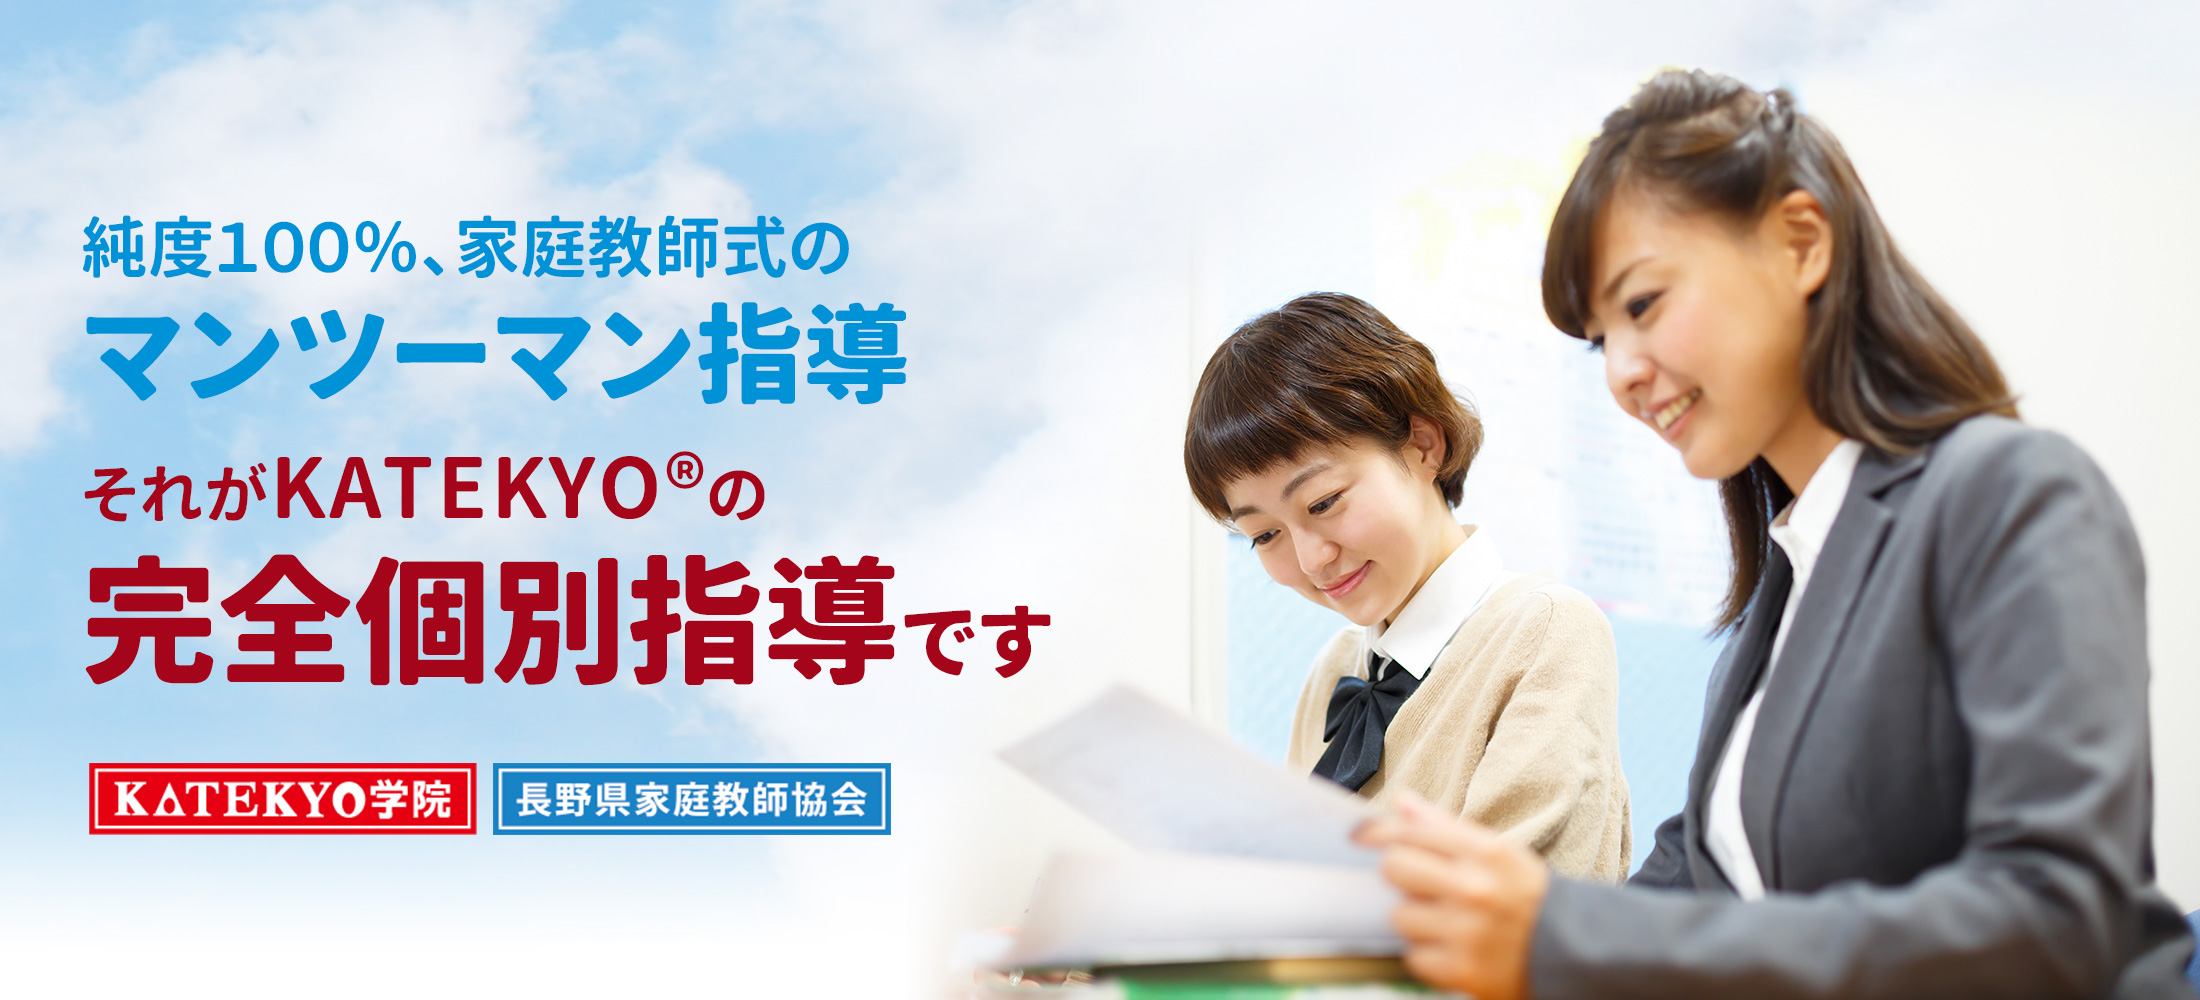 富山県でおすすめの塾ランキング 評判 料金 合格実績で比較 Studysearch